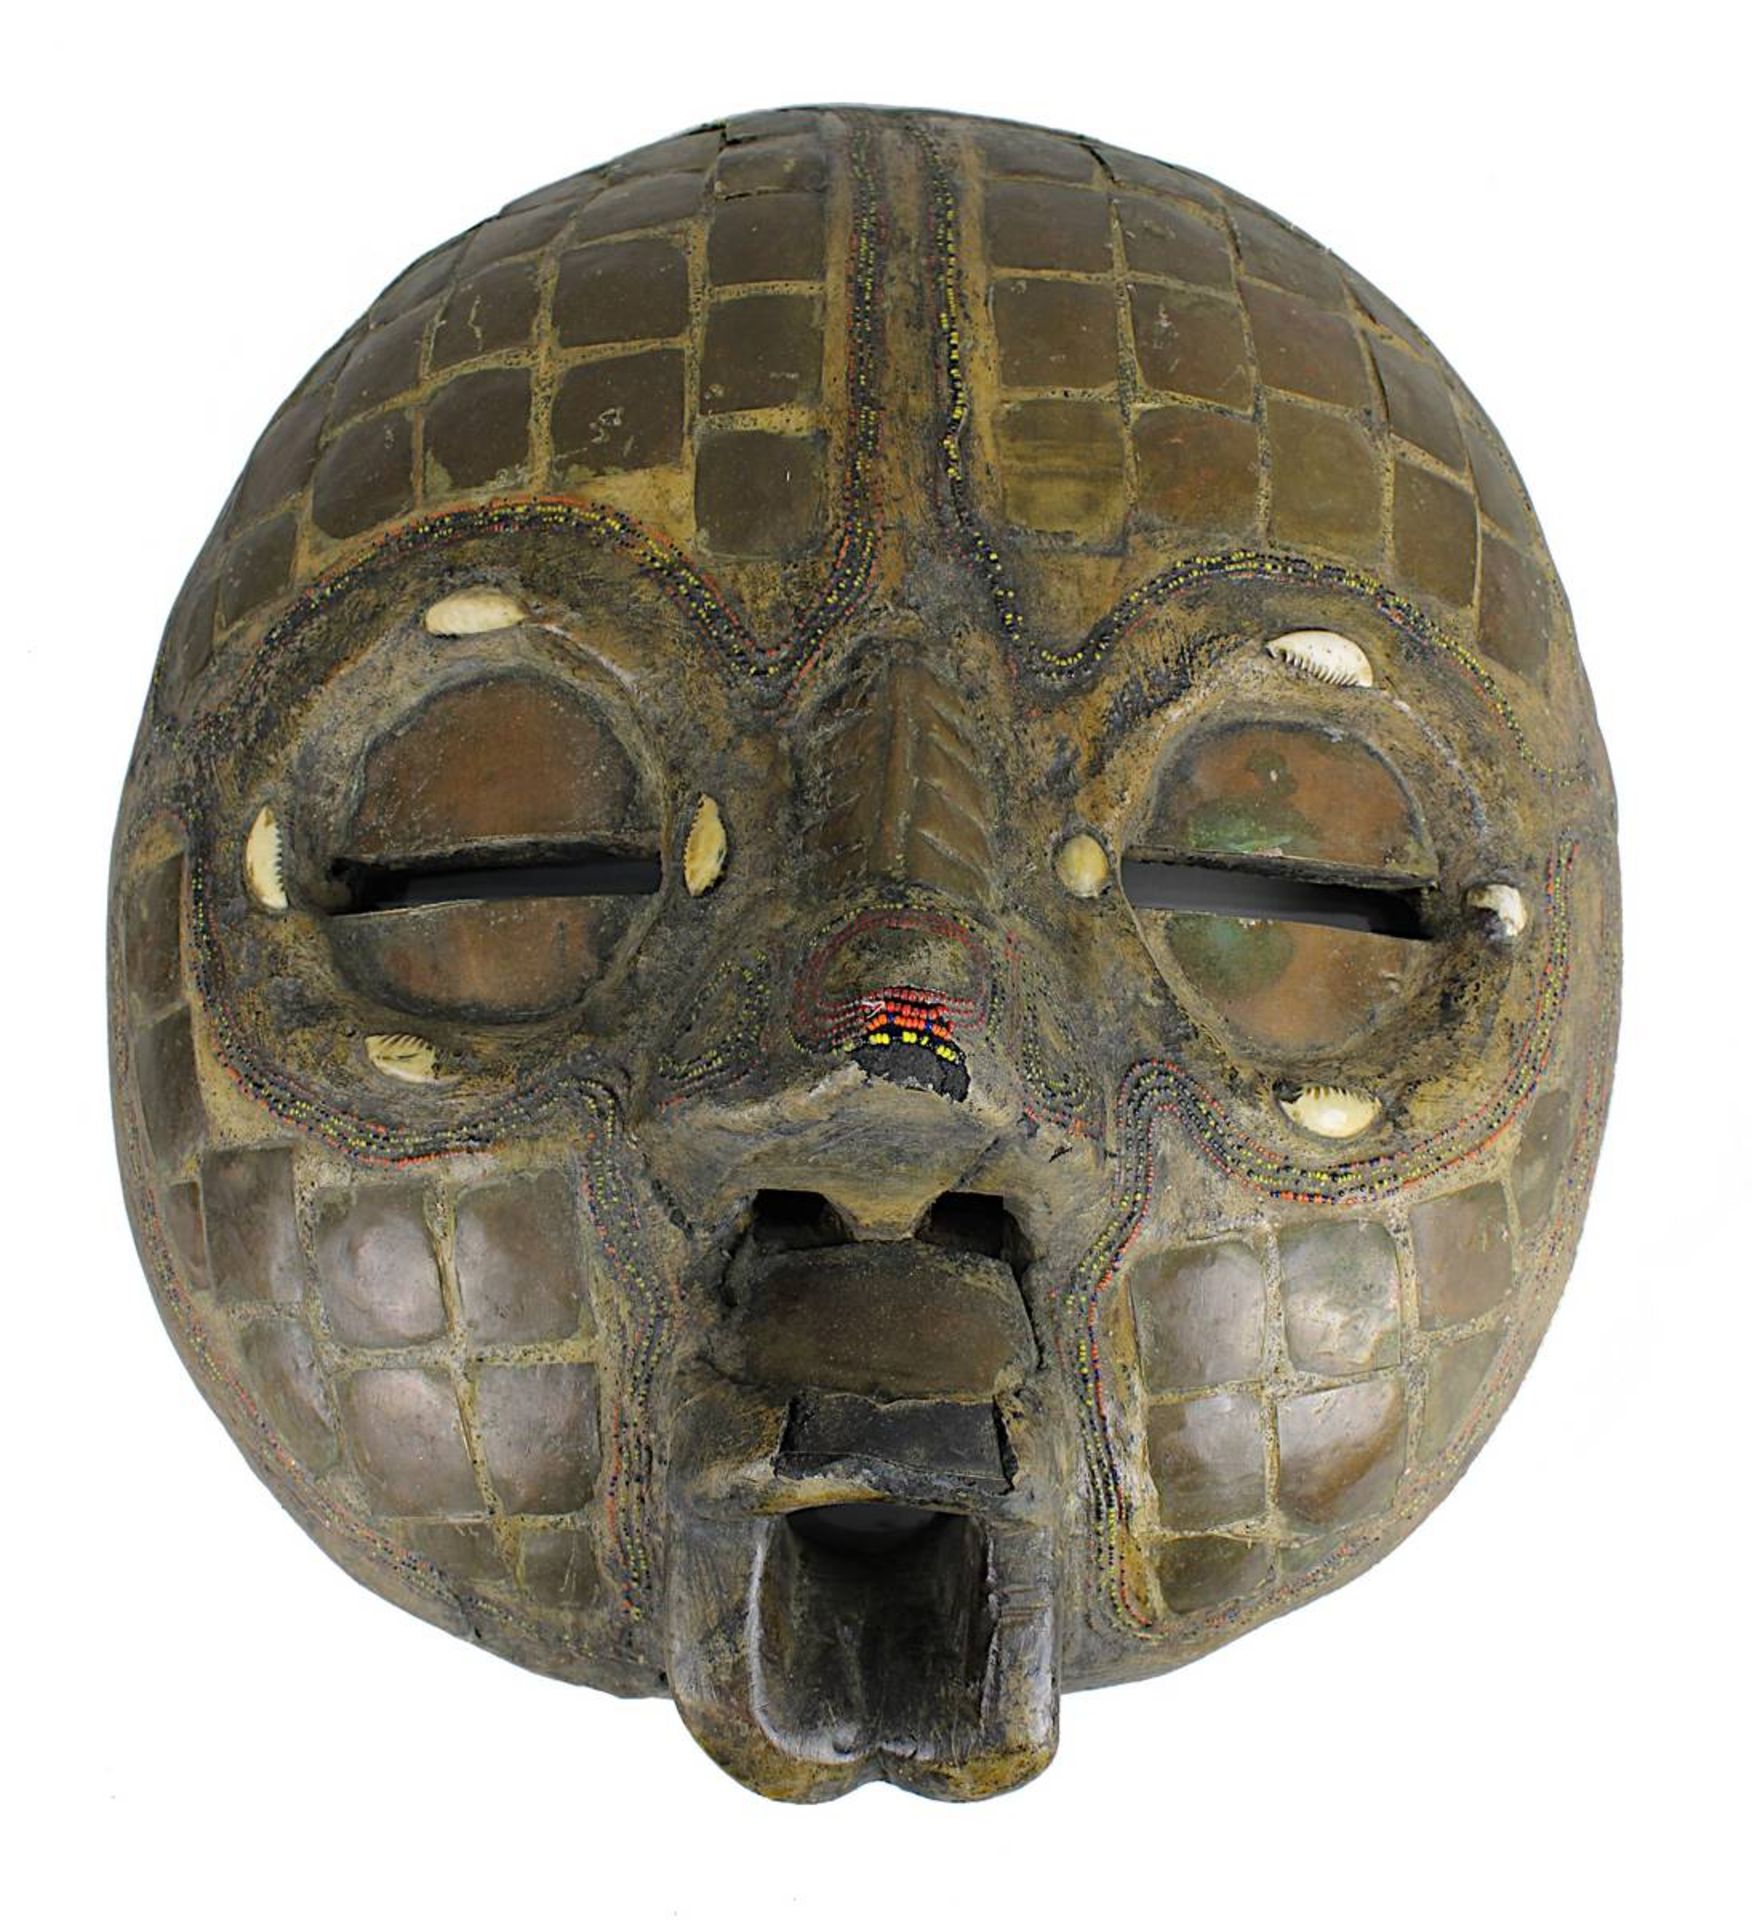 Paar Masken mit mondförmigen Gesichtern, Afrika 20. Jh., Augen mit Sehschlitzen, geöffnete Münder - Bild 3 aus 3